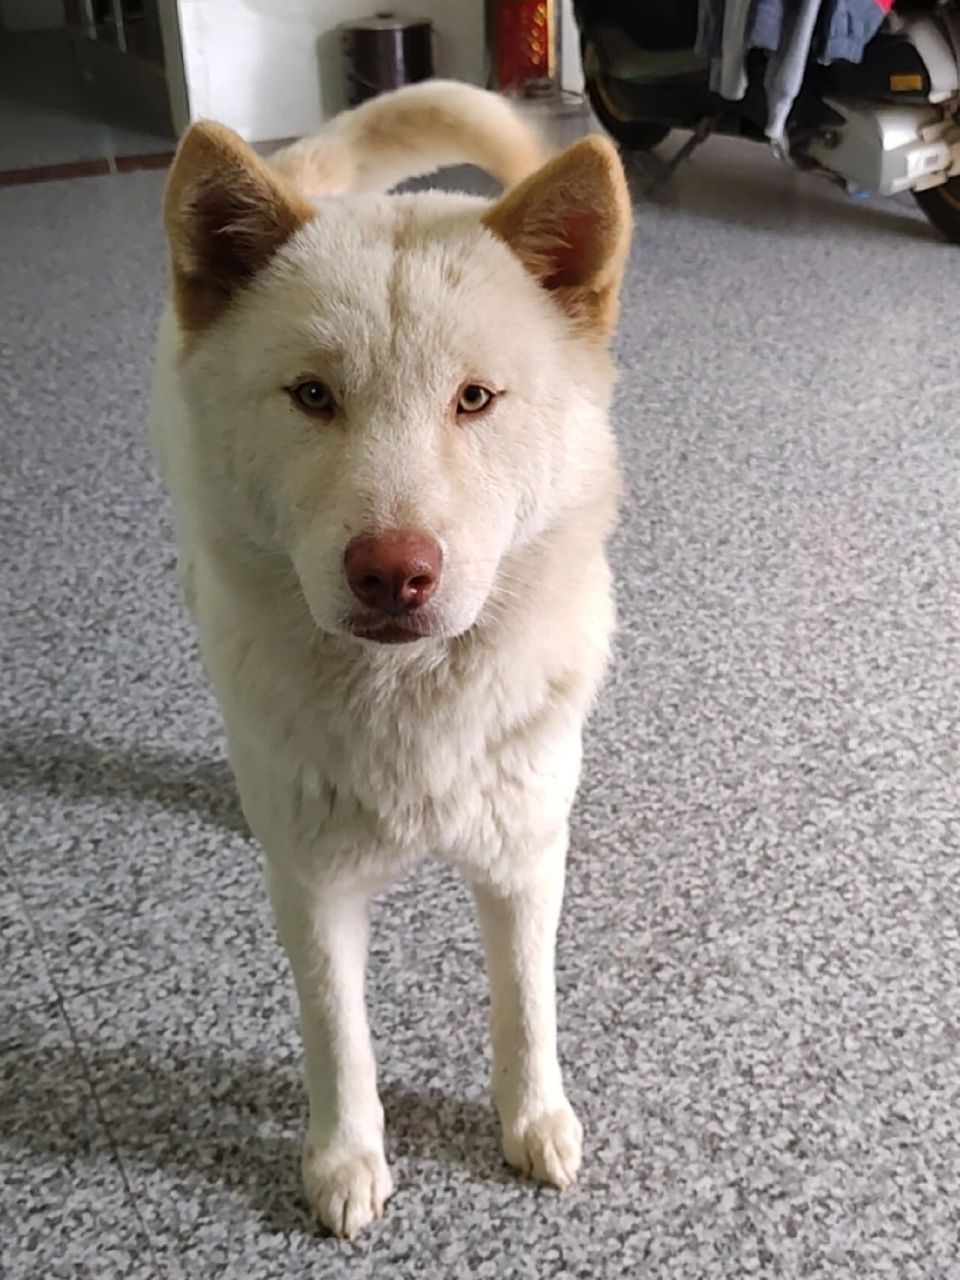 一只超级可爱的中华田园犬 狗狗名字叫皮皮,是一只拥有金色耳朵和金色